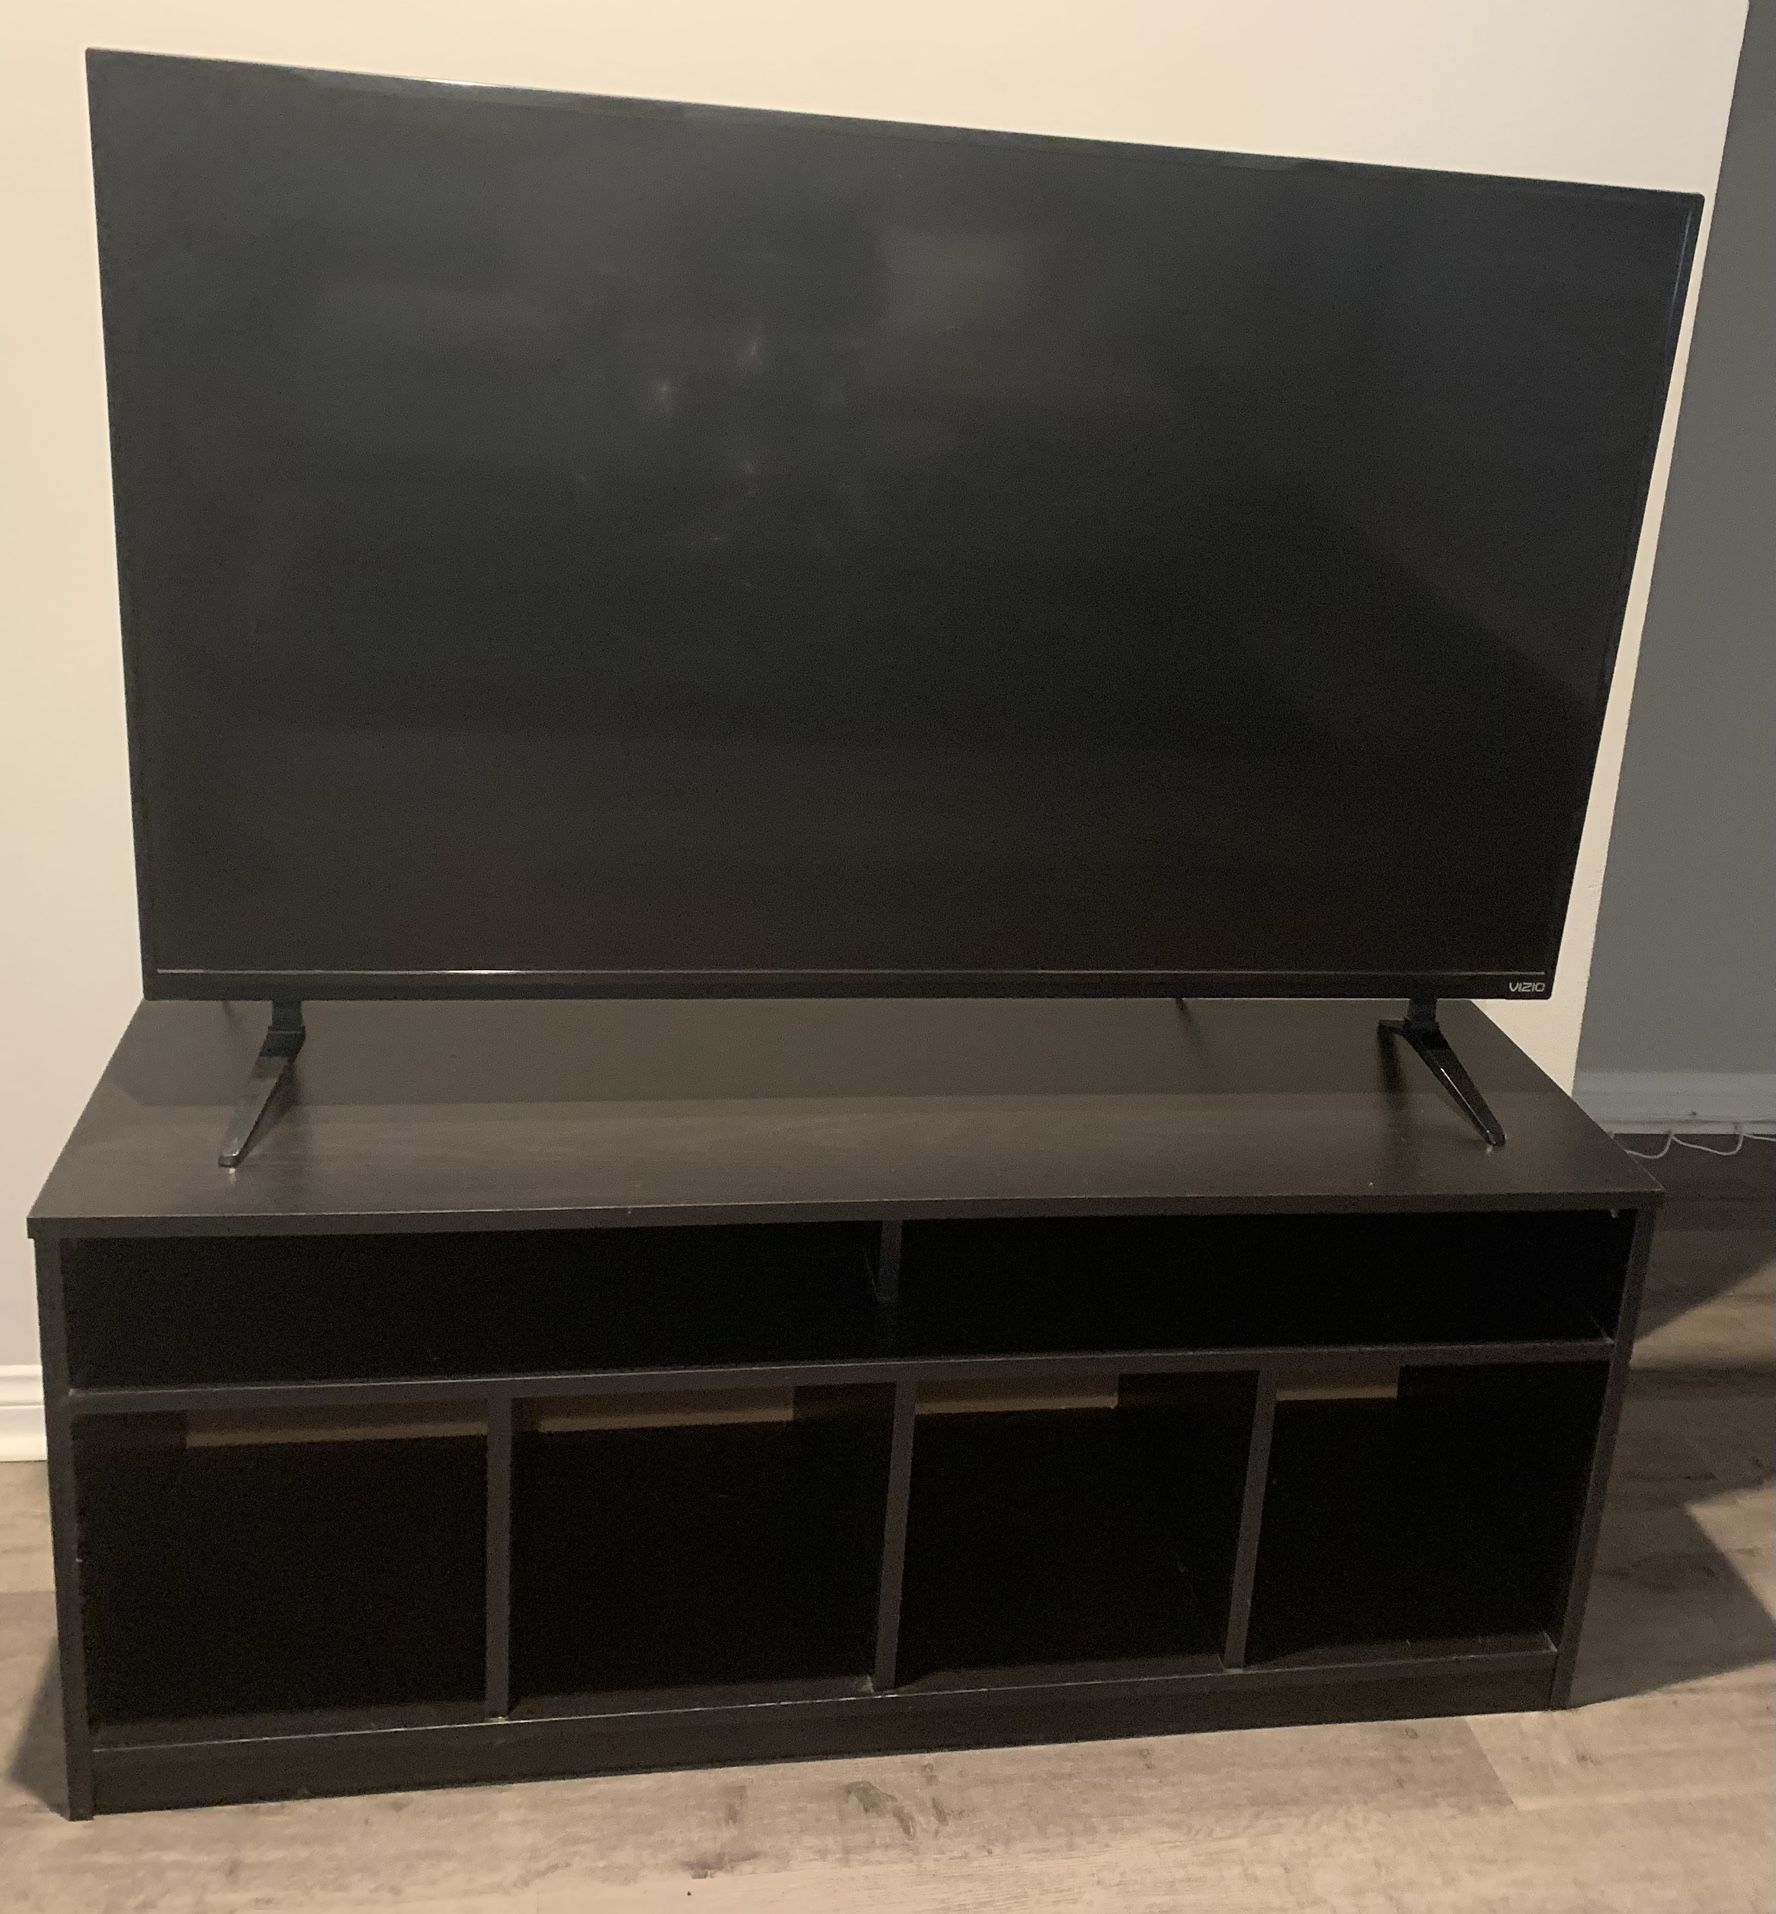 Used 2018 35 Inch Vizio Tv, TV Stand & Amazon Fire Tv Stick 